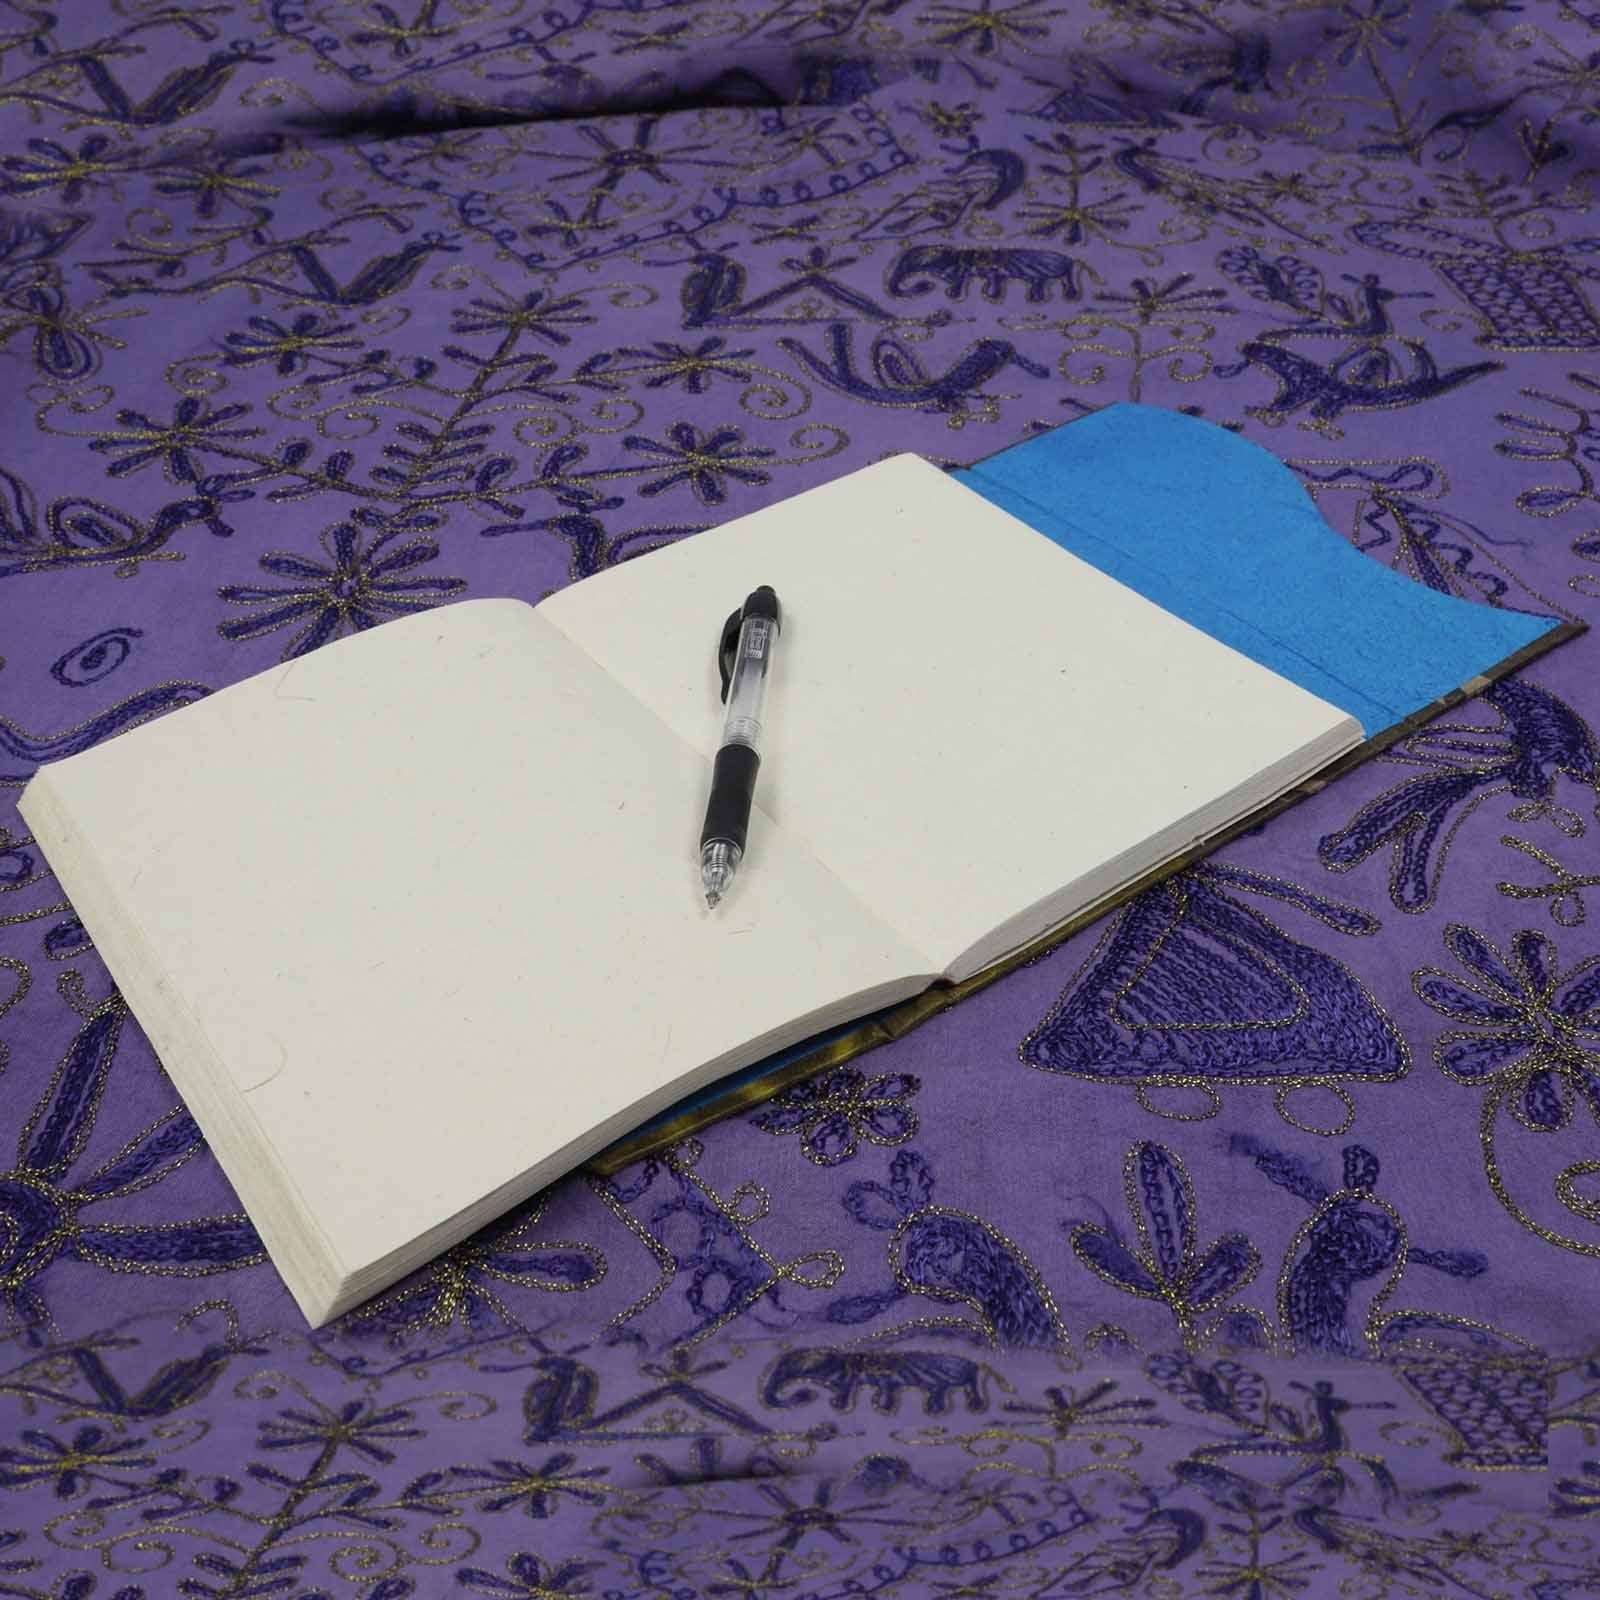 Papier Nepal aus UND Tagebuch Lokta Handgemachtes Notizbuch Poesiealbum KUNST MAGIE Tagebuch